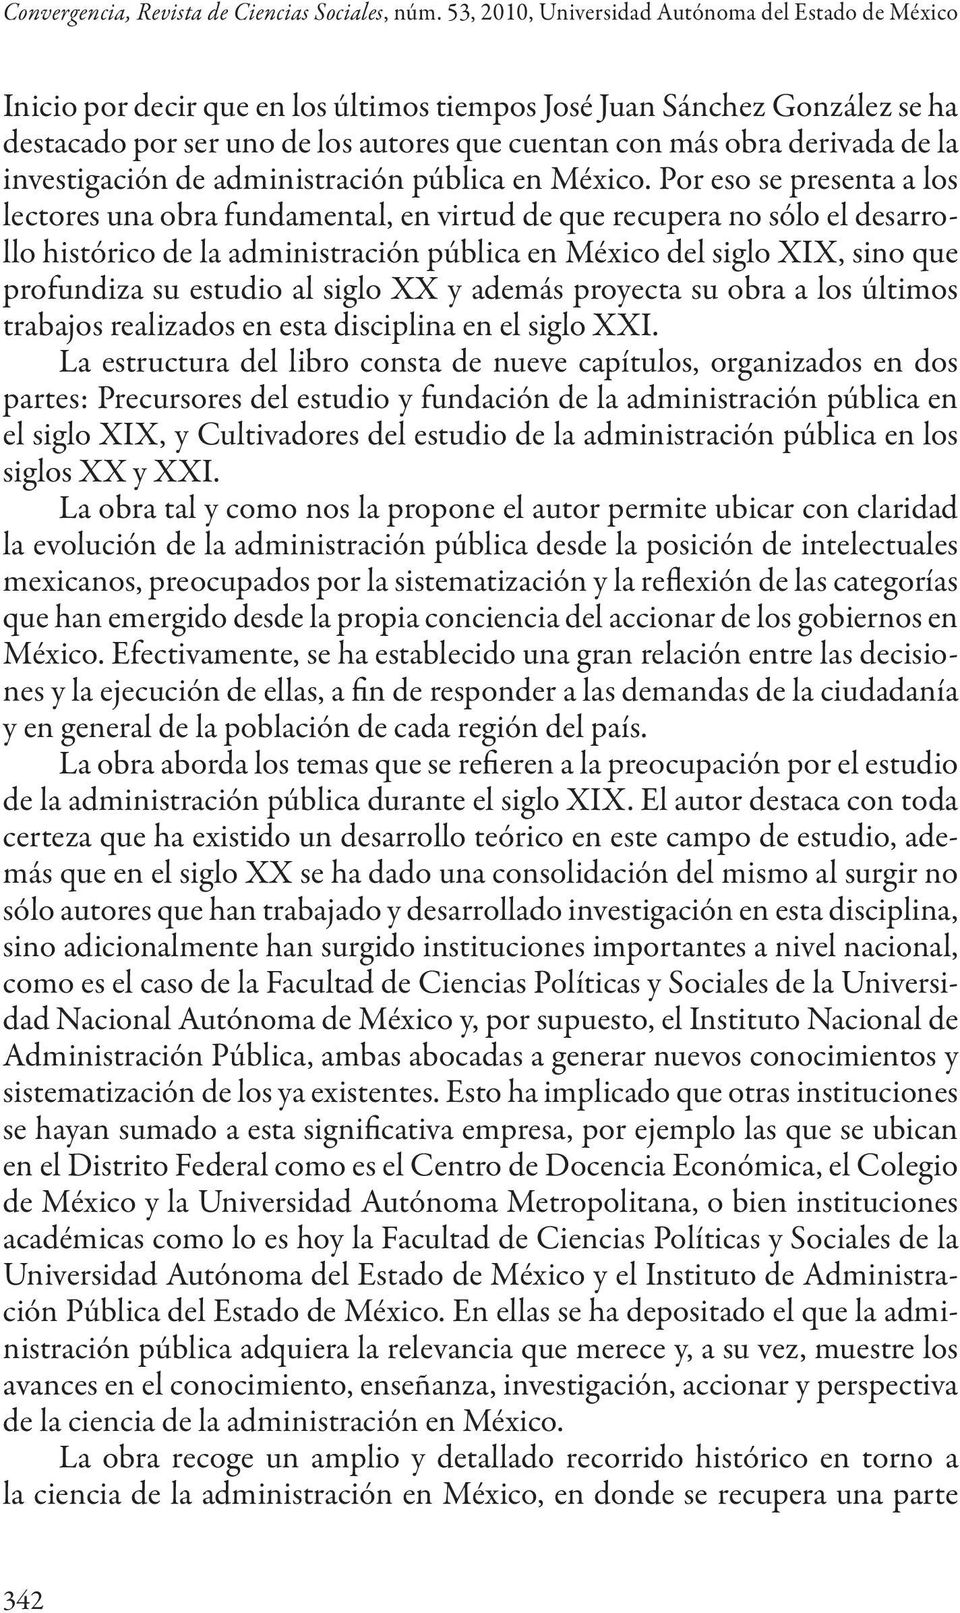 de la investigación de administración pública en México.